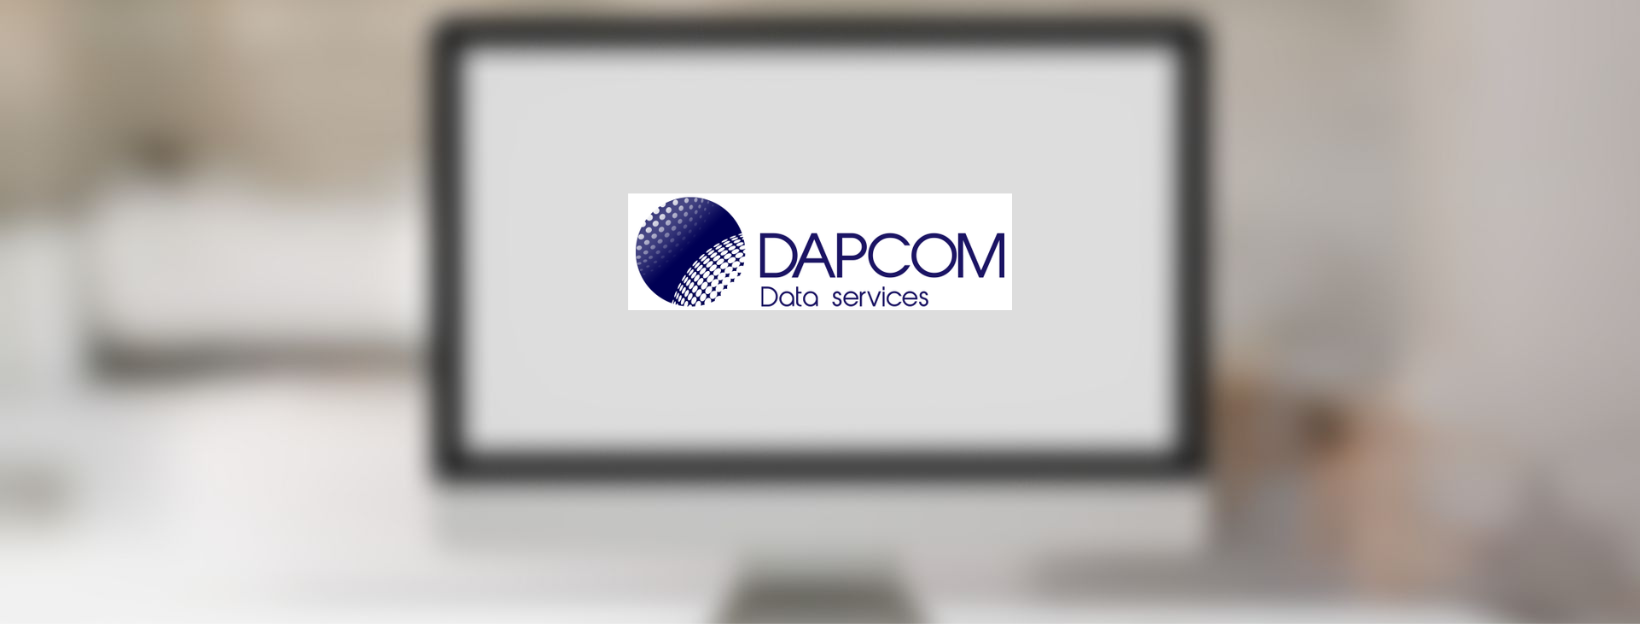 Un nuevo proyecto SEO para Dapcom Data Services